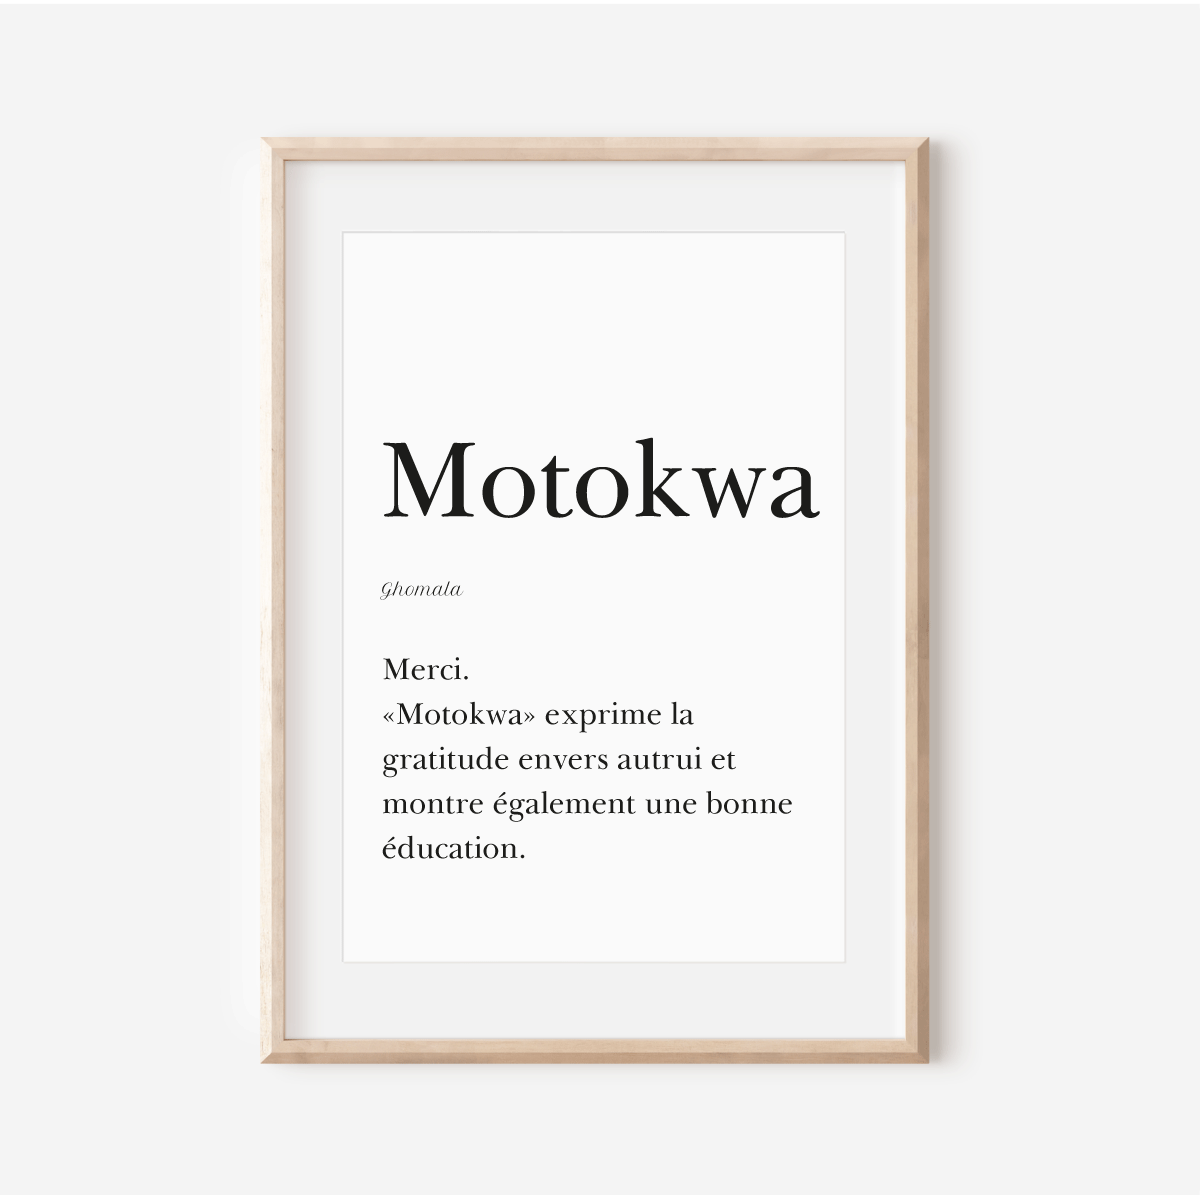 Merci en Ghomala - Affiche "Motokwa"